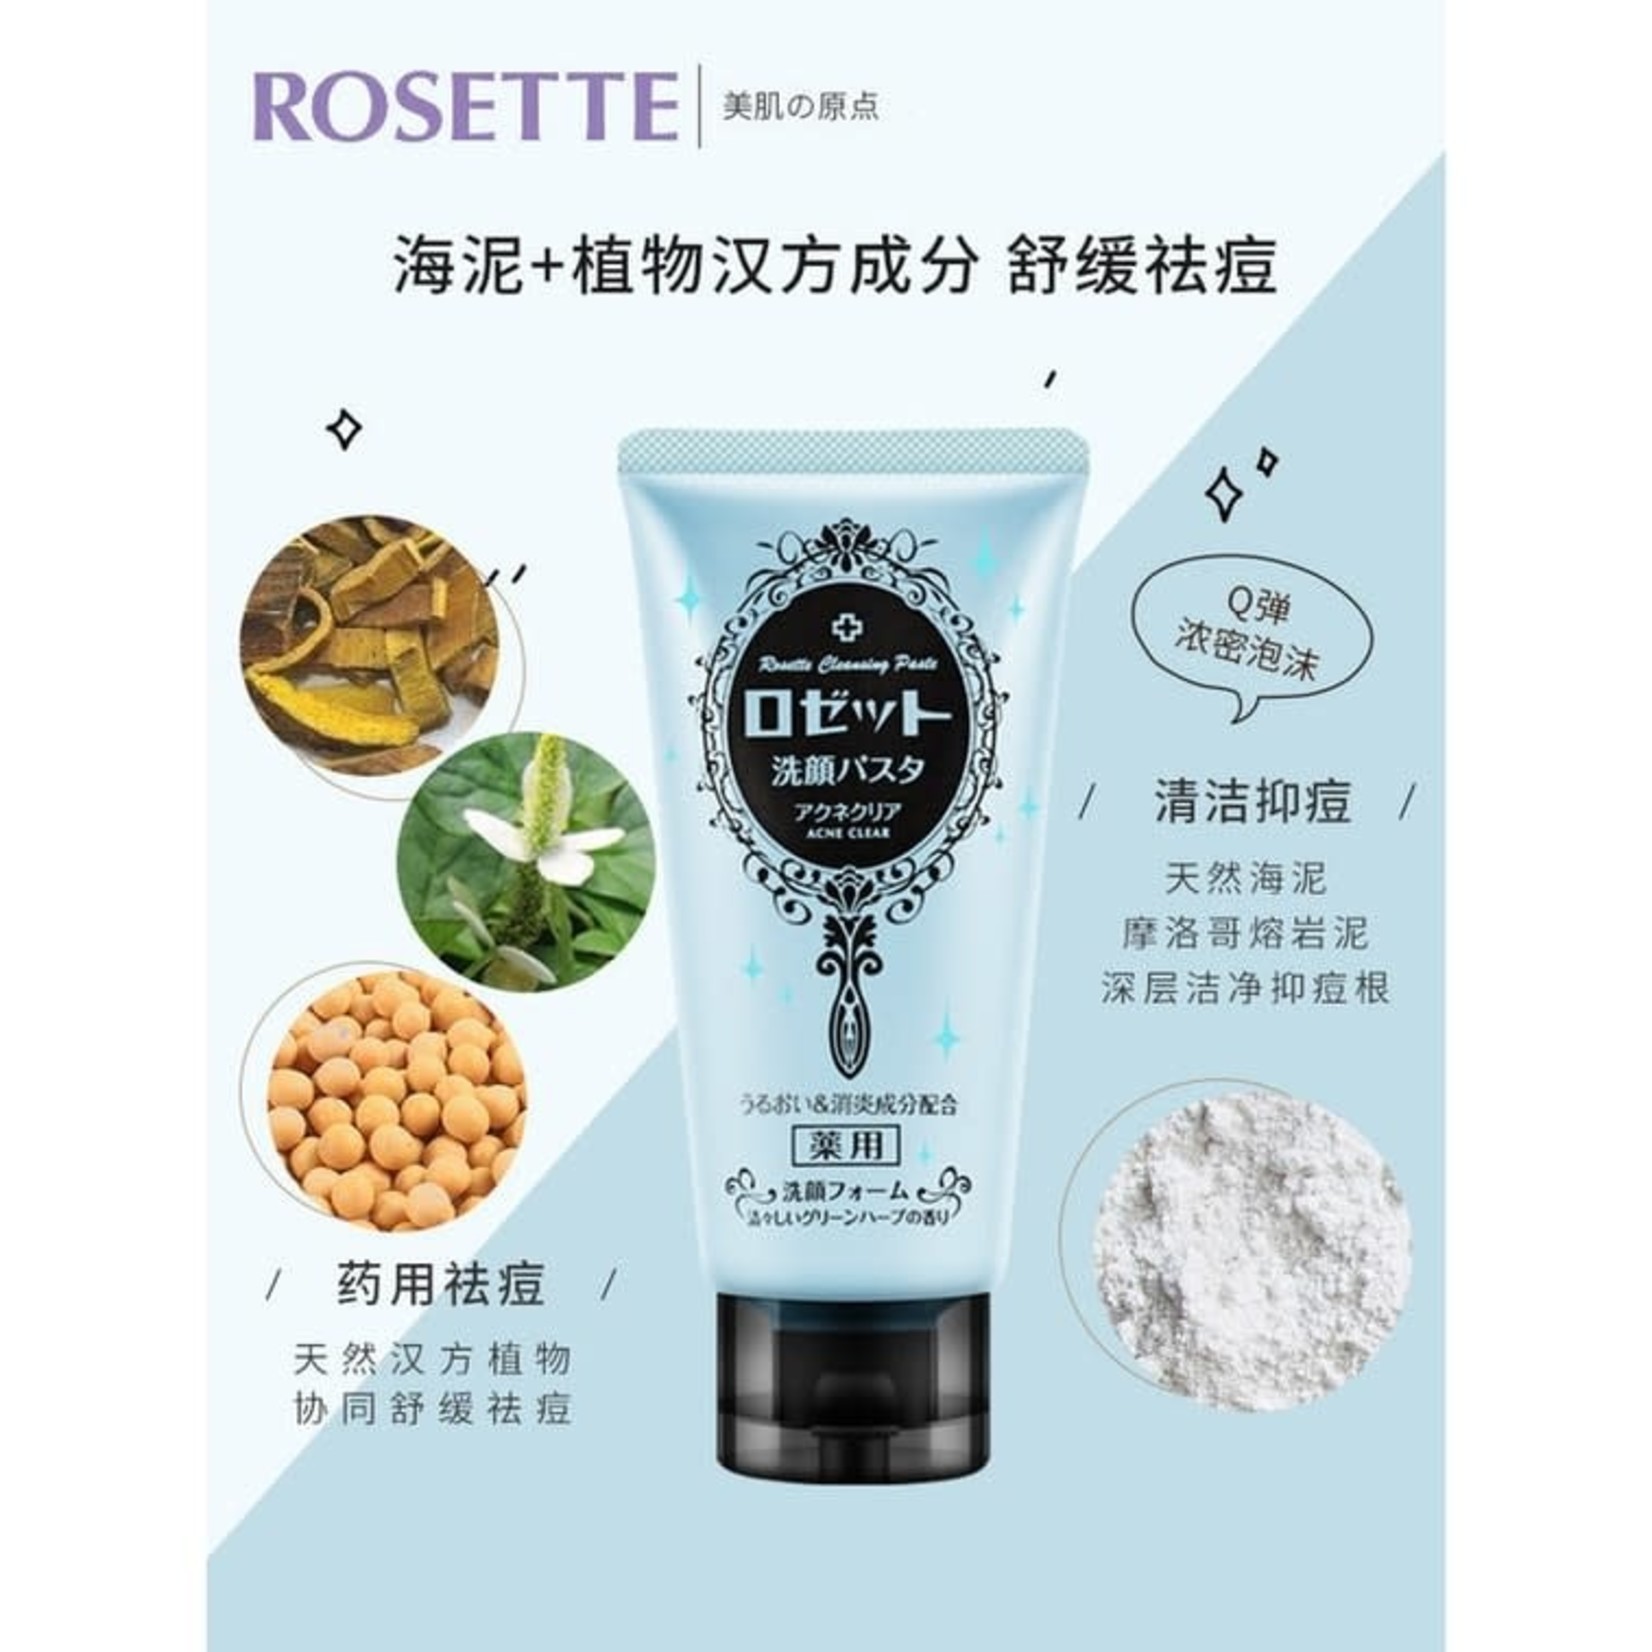 Rosette Rosette Cleansing Paste Acne Clear 120g